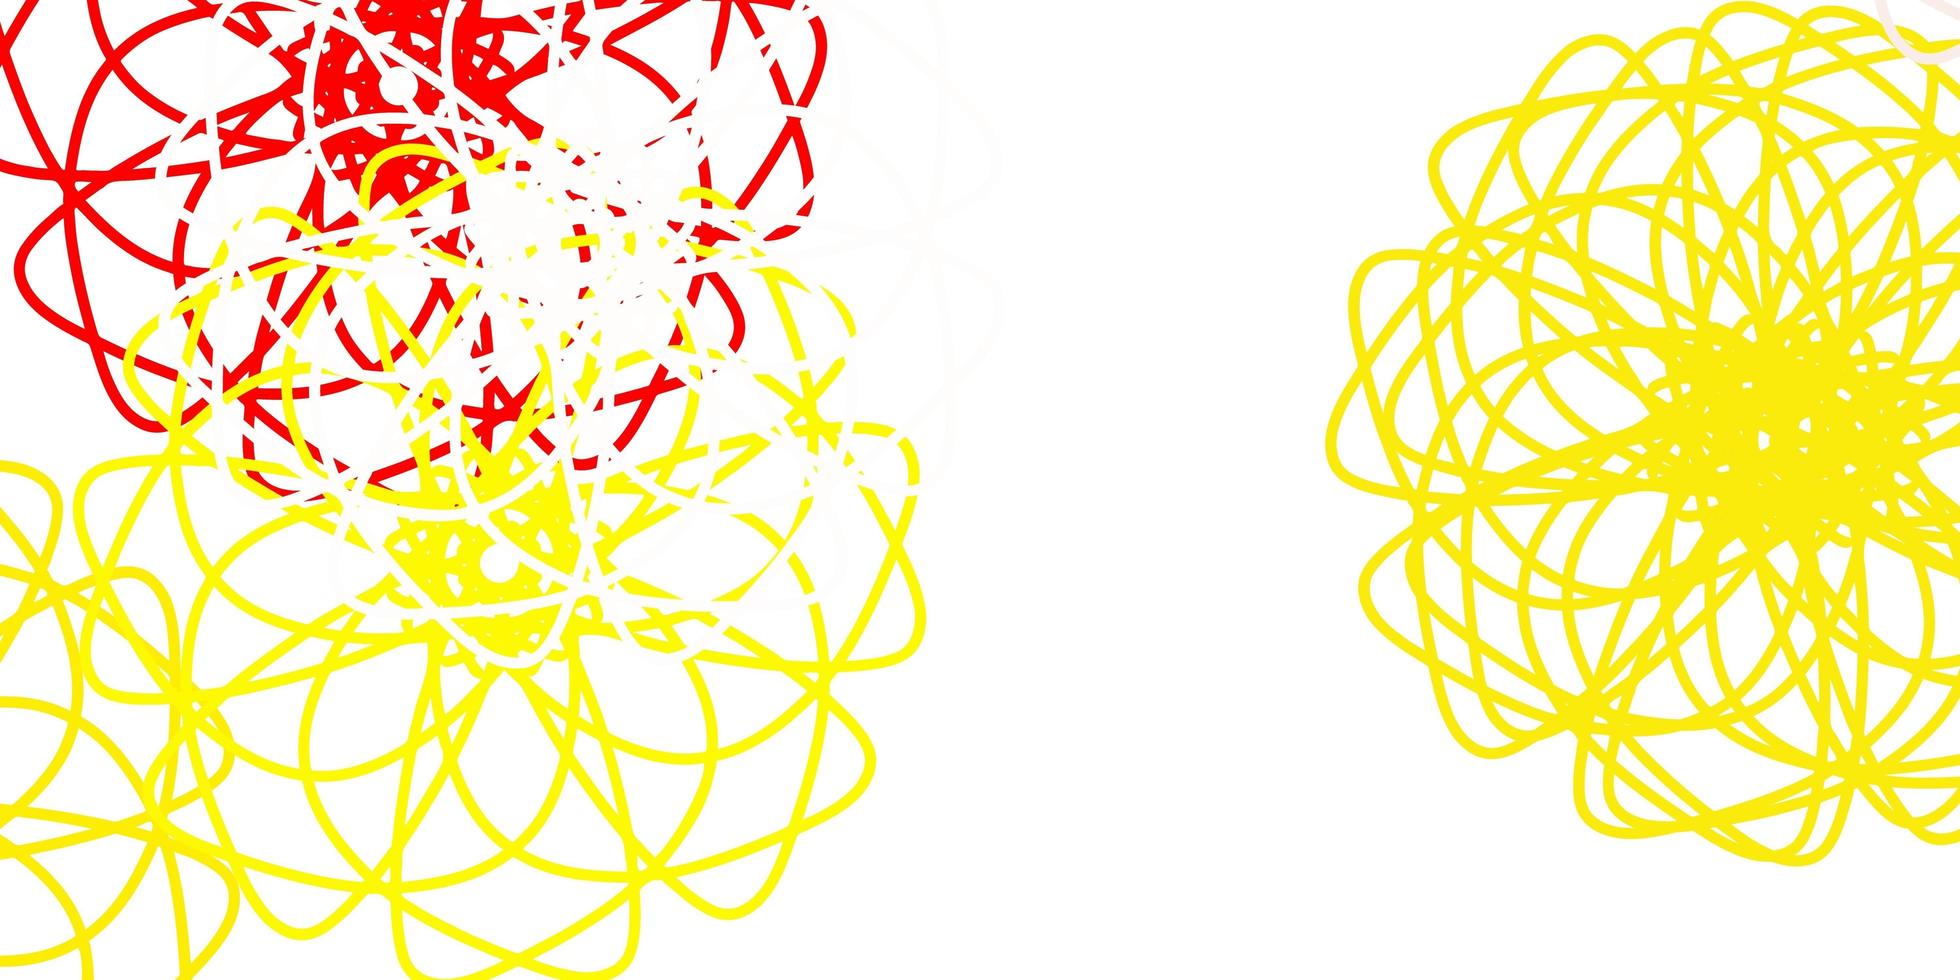 modèle de doodle de vecteur rouge et jaune clair avec des fleurs.